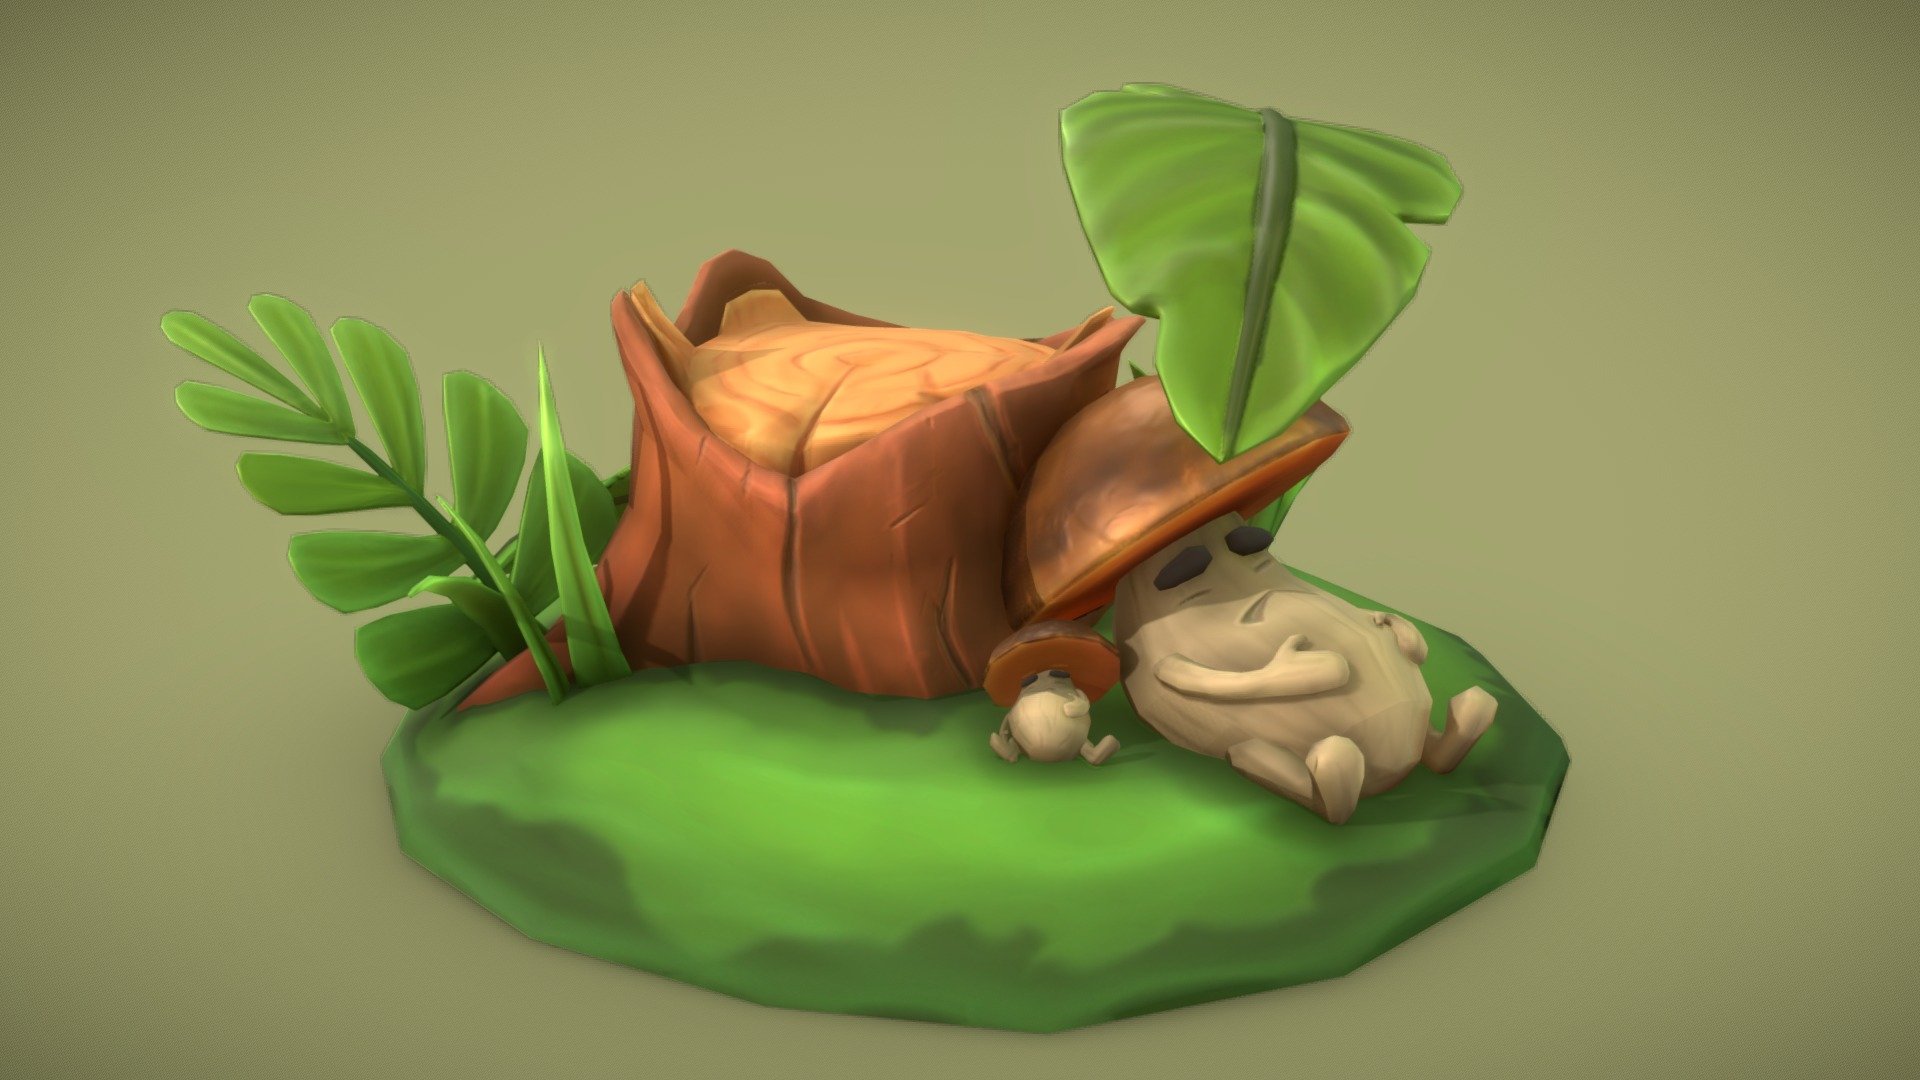 Lazy mushroom is waiting for challenge - Lazy Mushroom - Download Free 3D model by halenpet 3d model